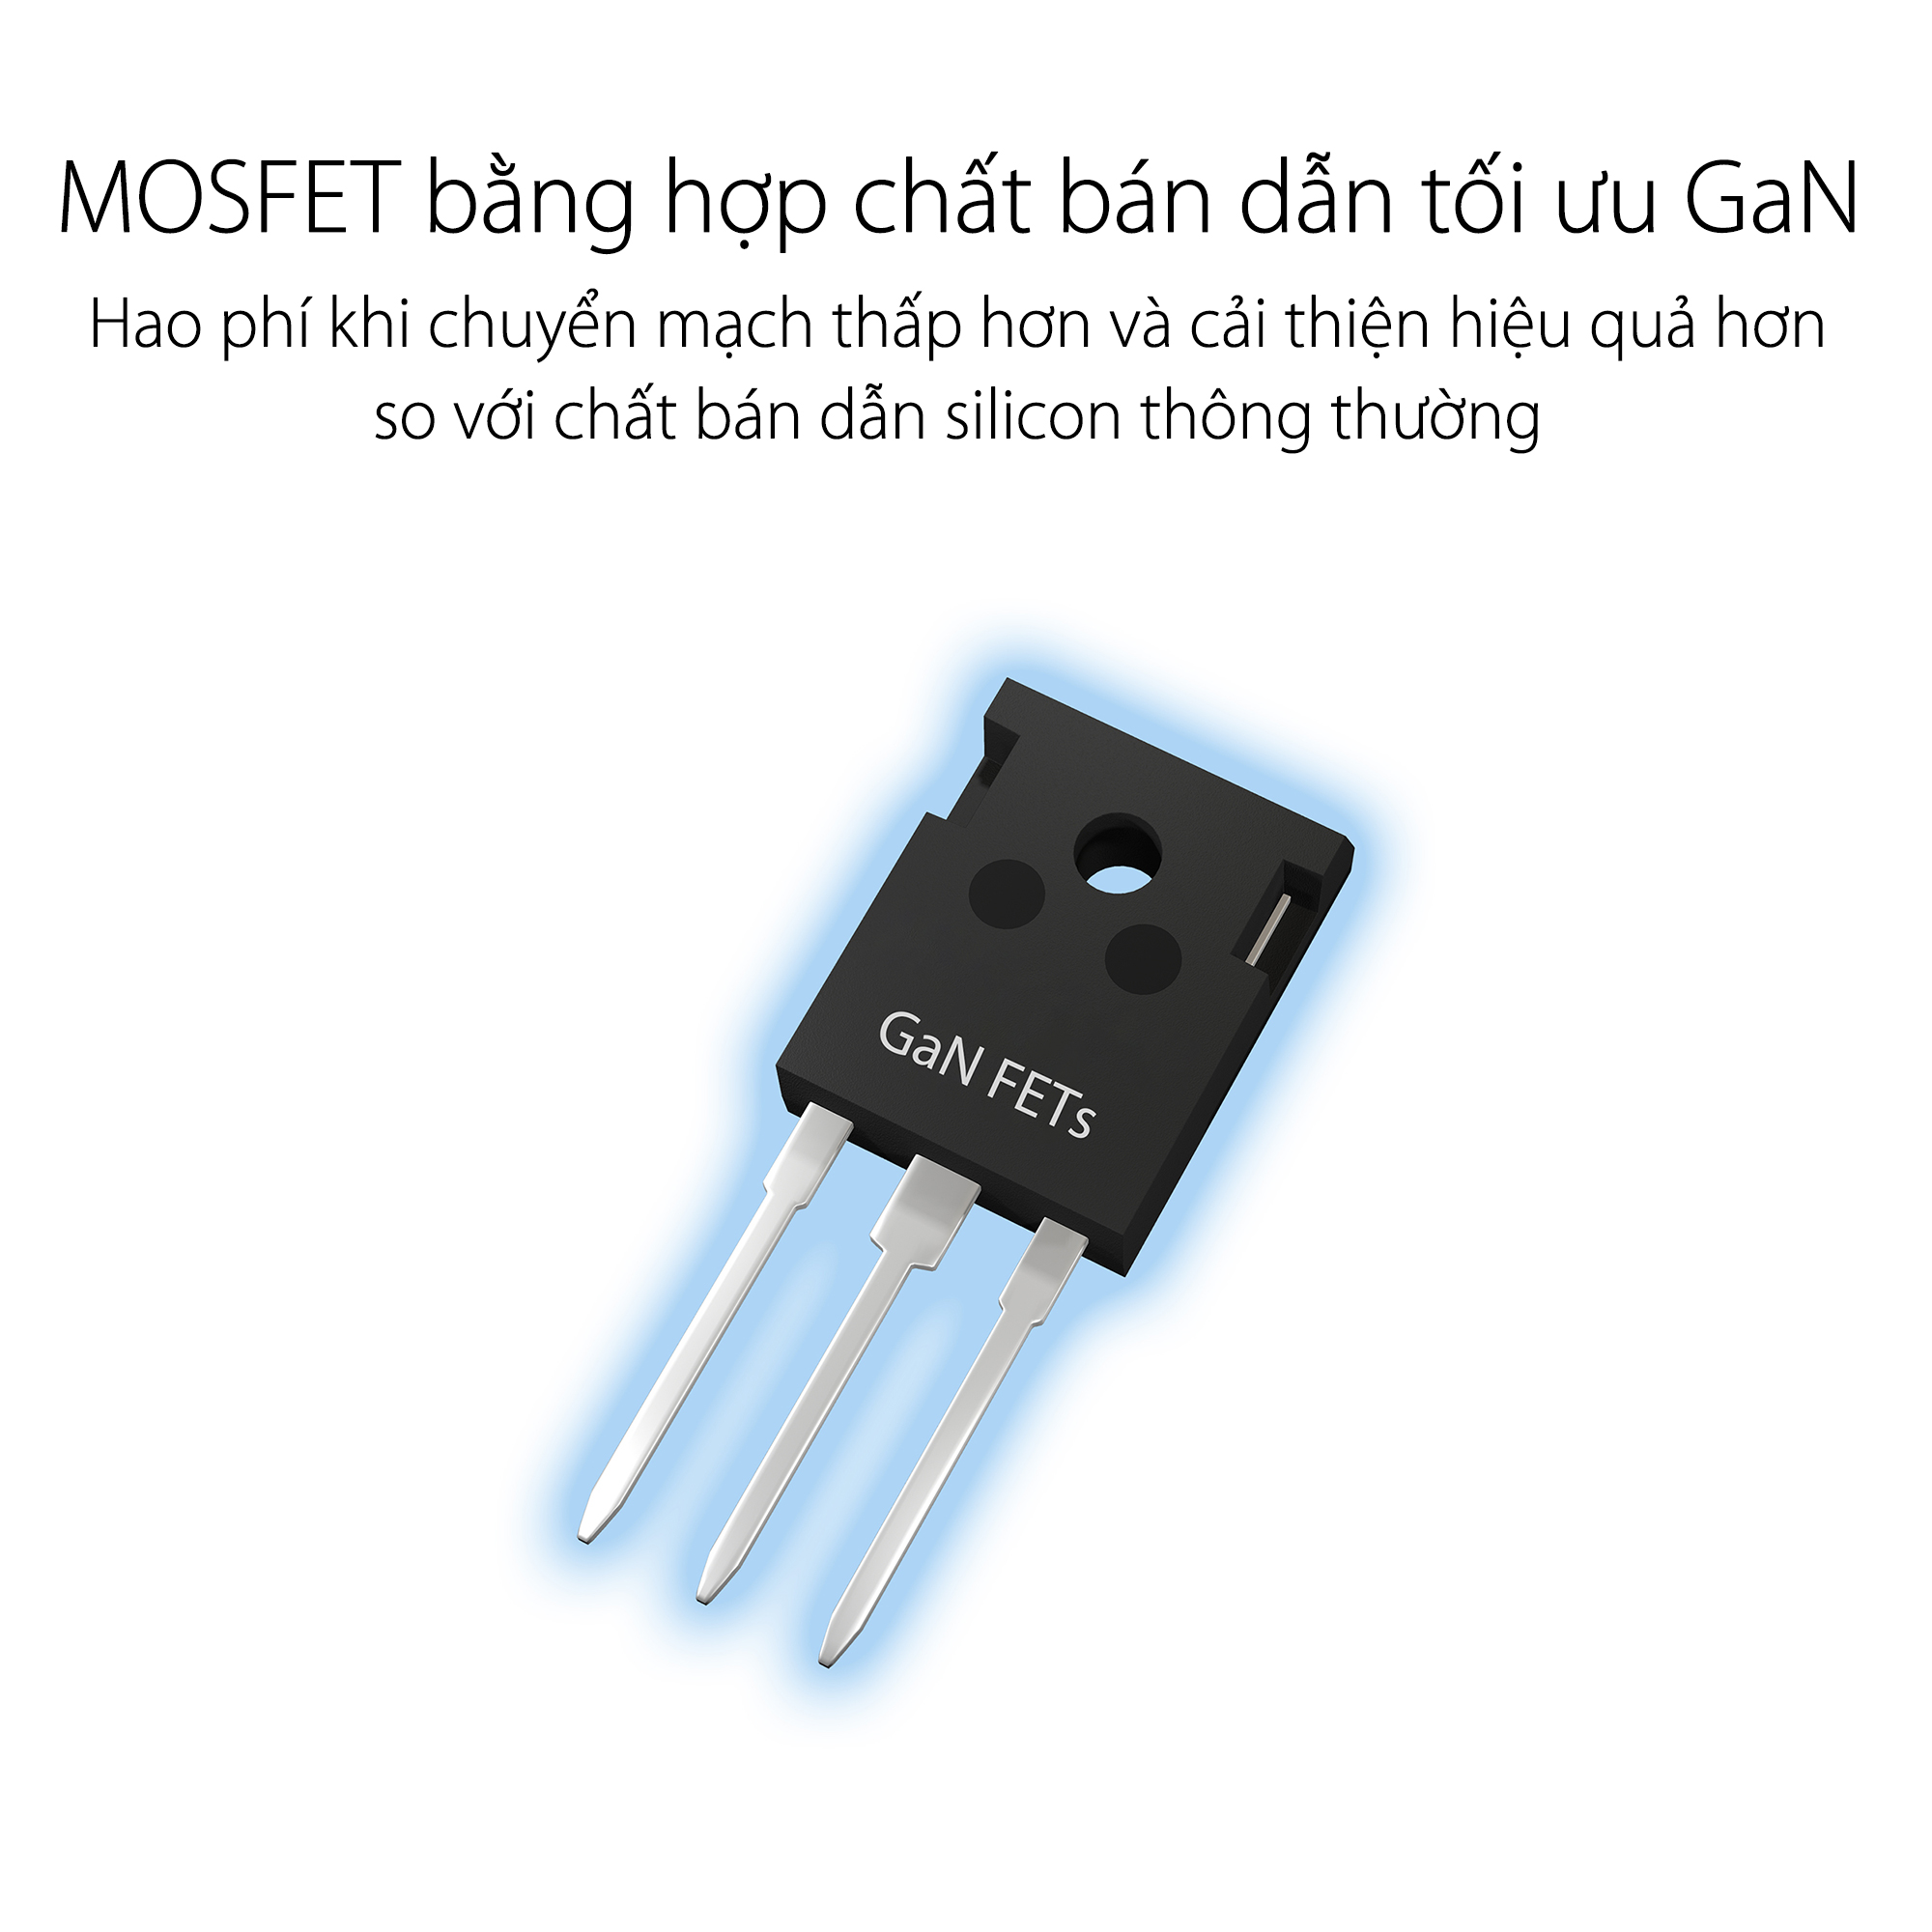 MOSFET-Nguồn  ASUS ROG THOR - 1600T Gaming Titanium - 1600W